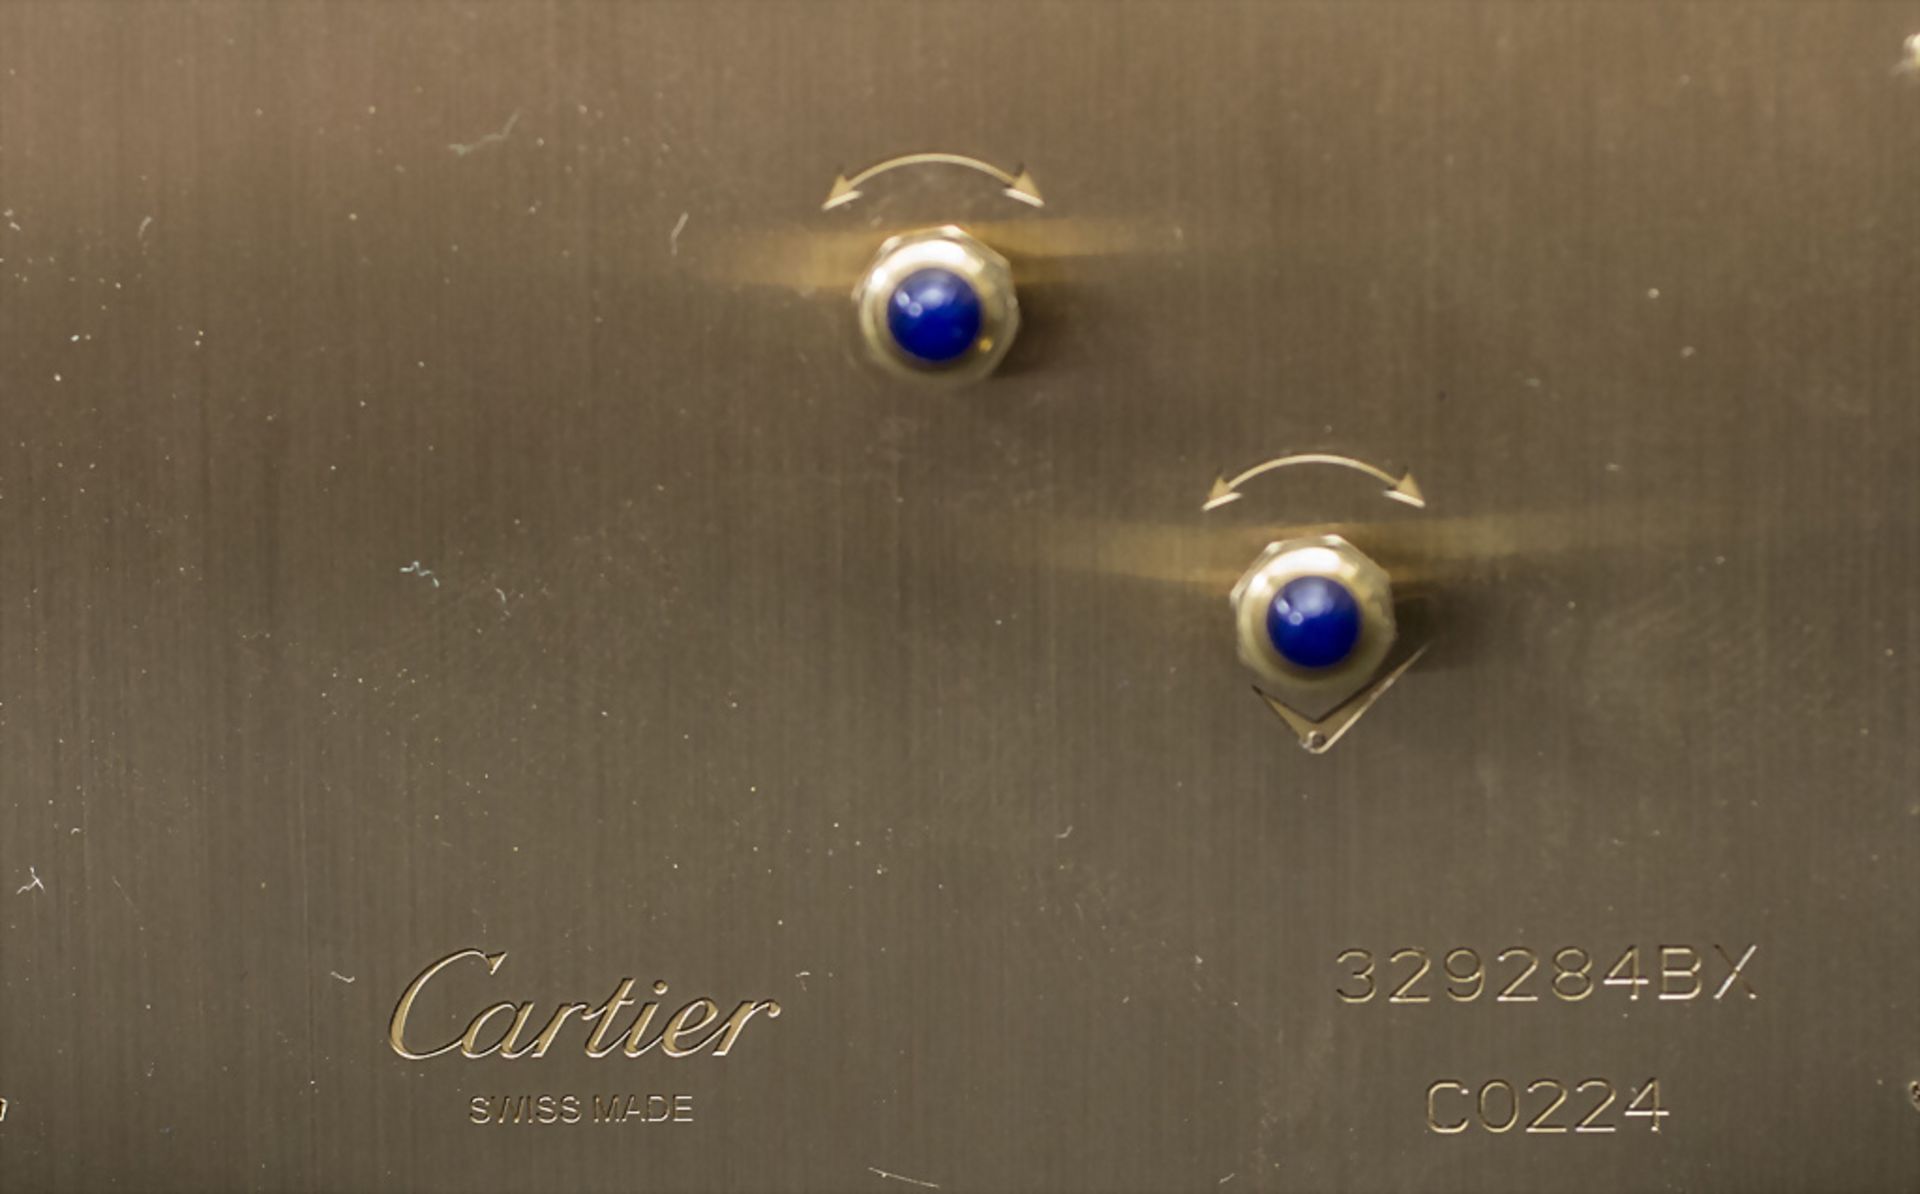 Art Déco Schreibtischuhr / An Art Deco desk clock with enamel, Cartier, Swiss Made, 20. Jh. - Bild 7 aus 7